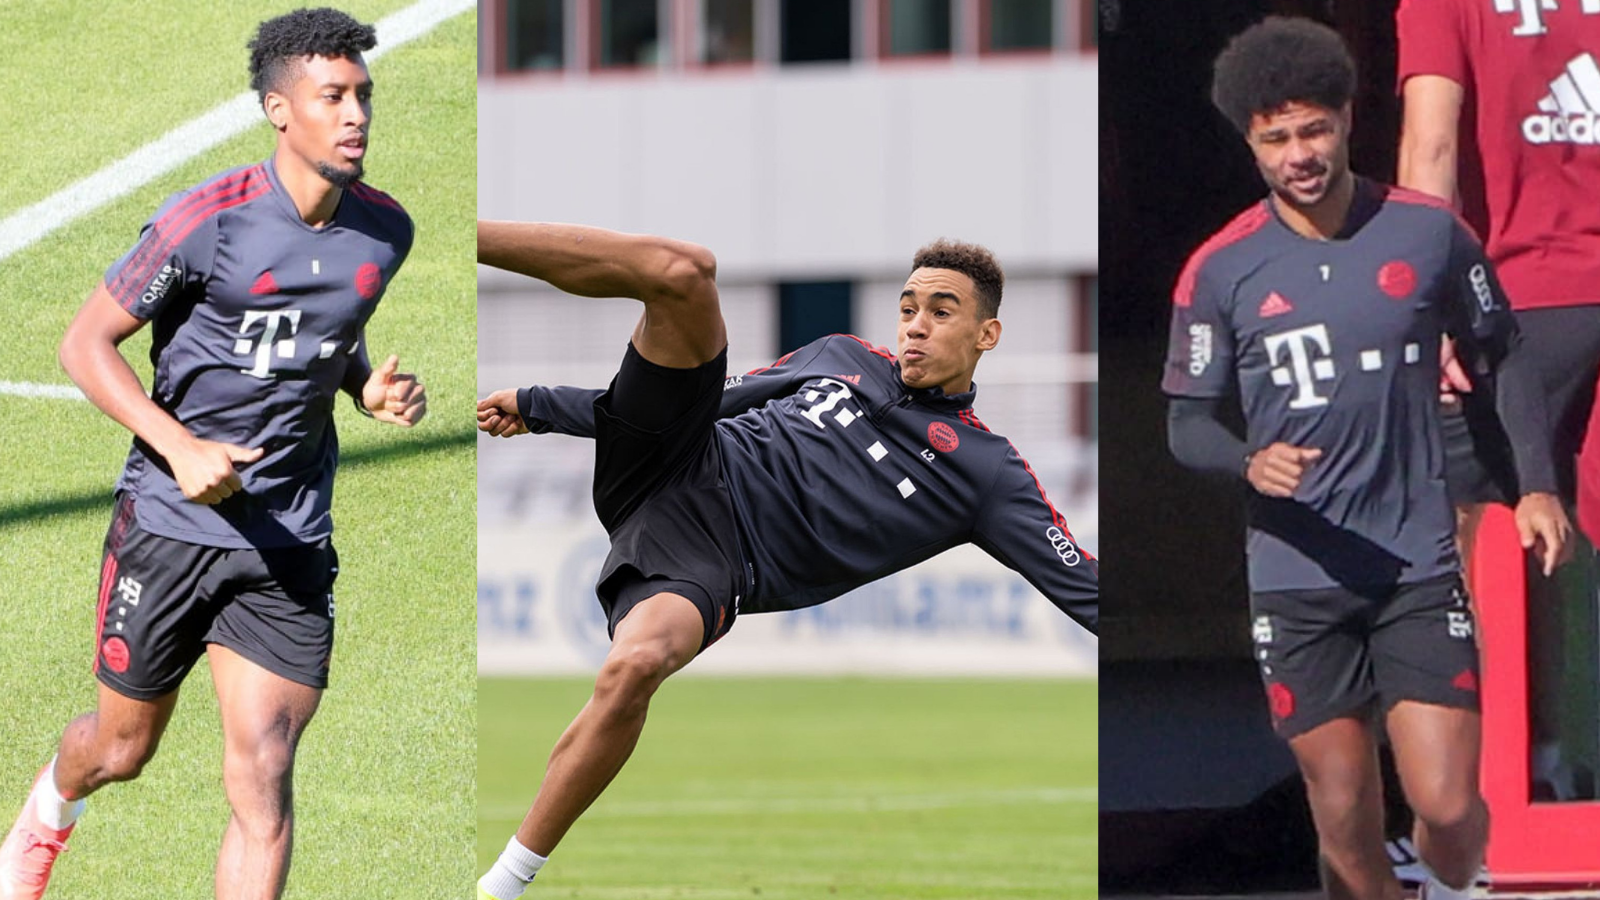 de nuevo Meyella pavo Gnabry, Musiala y Coman regresan a los entrenamientos del FC Bayern München  - Mi Bundesliga - Futbol alemán, en español